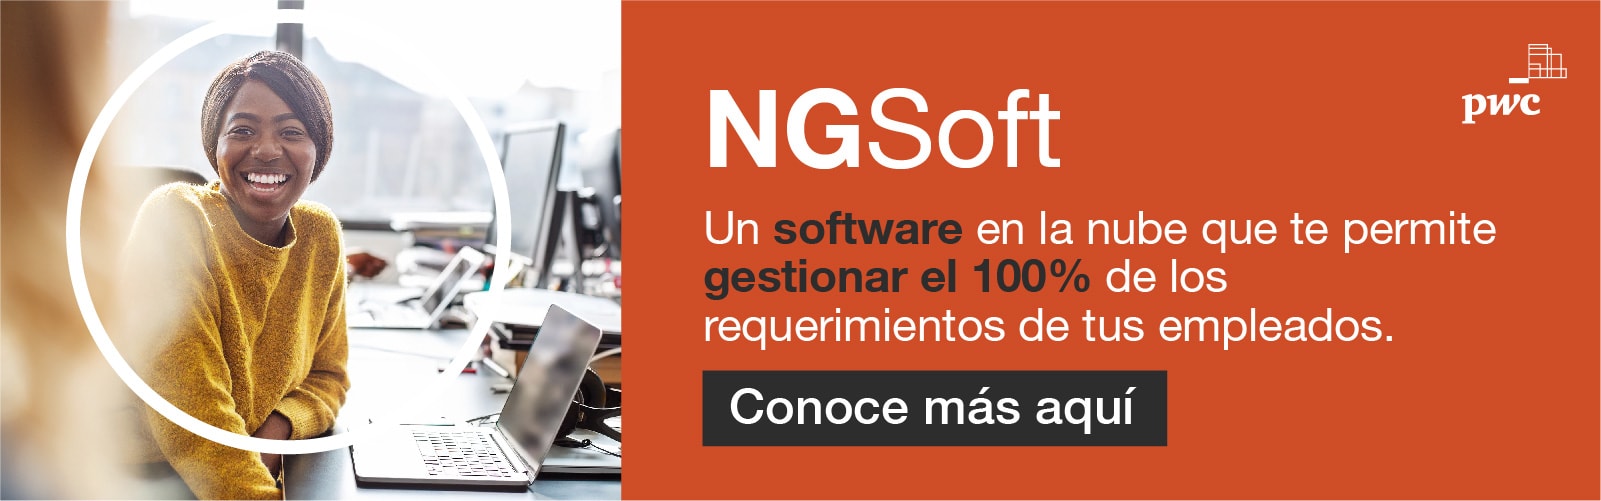 NGSoft: Nuestro software de nómina en la nube | PwC Colombia